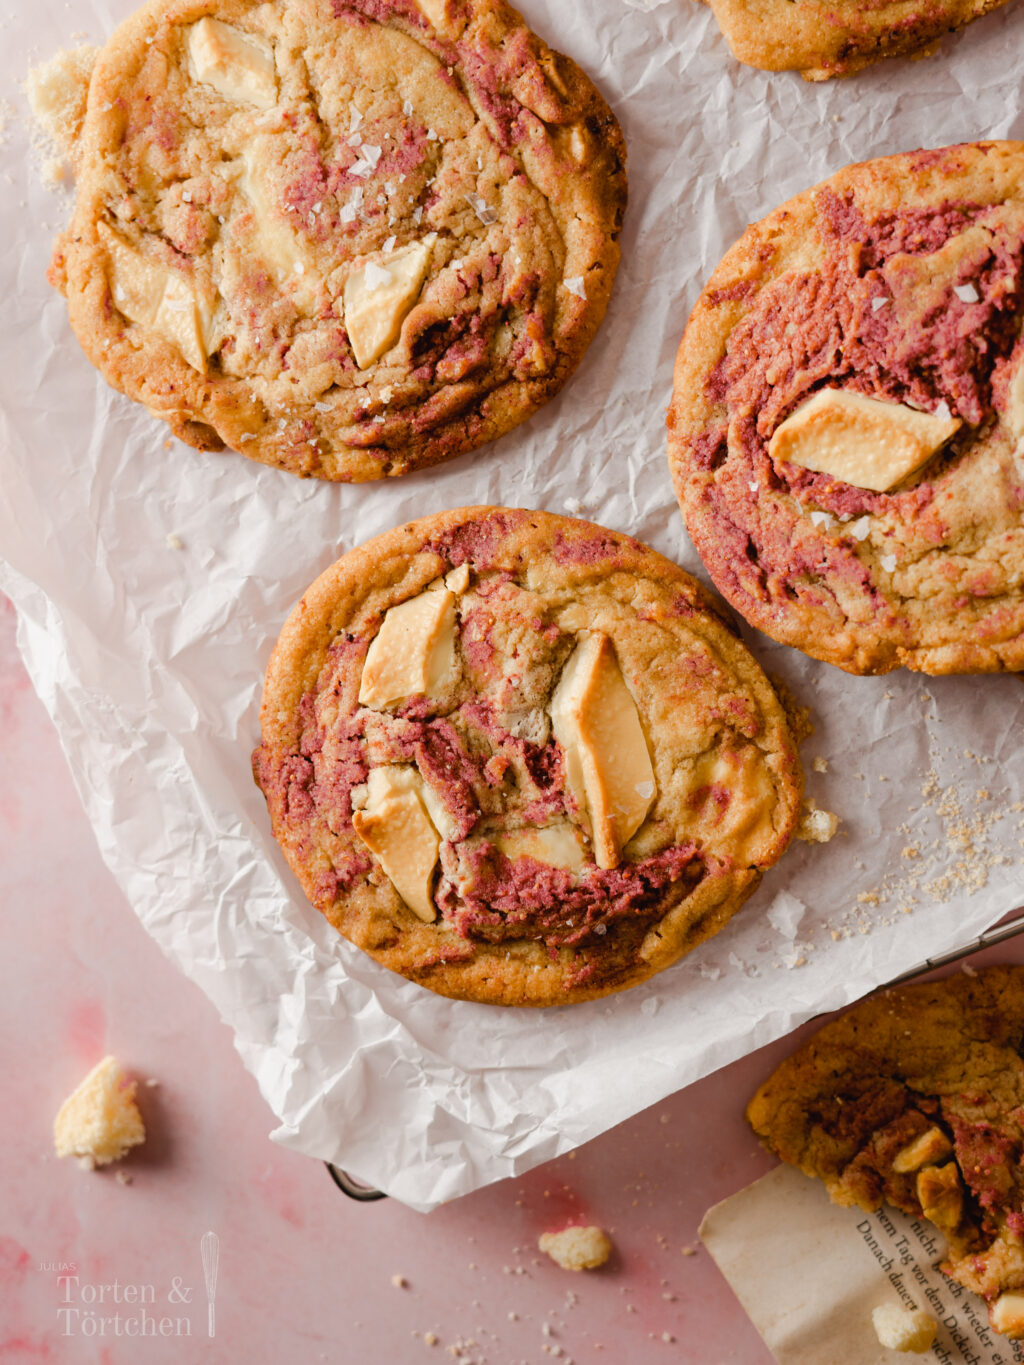 Einfaches und gelingsicheres Rezept für softe chewy Erdbeer Cookies mit weißer Schokolade. Schnell gemacht und mit einem rosa Swirl nicht nur super lecker, sondern auch noch super hübsch.

#Rezept #Backen #Kekse #Cookies #Erdbeeren